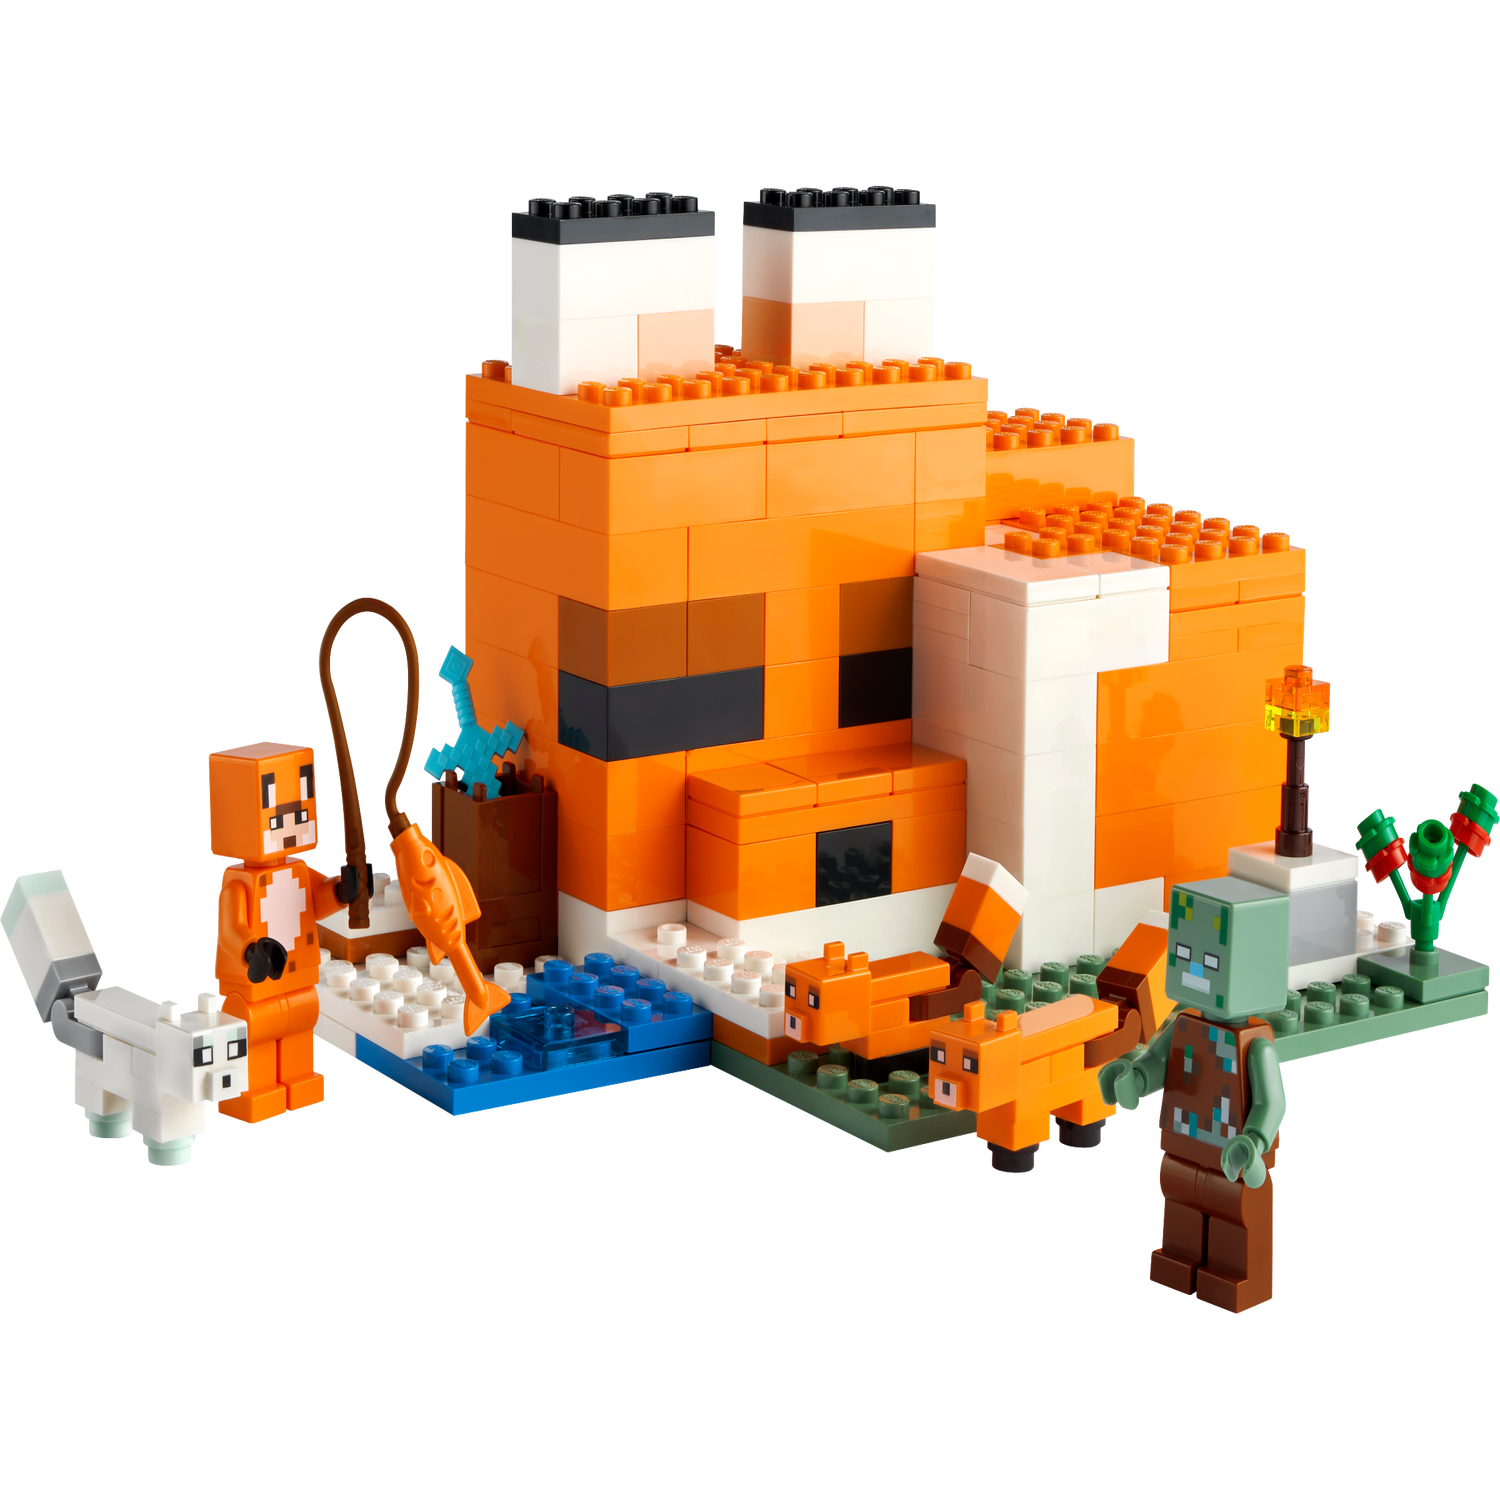 Le refuge renard 21178 | Minecraft® | Boutique LEGO® officielle BE